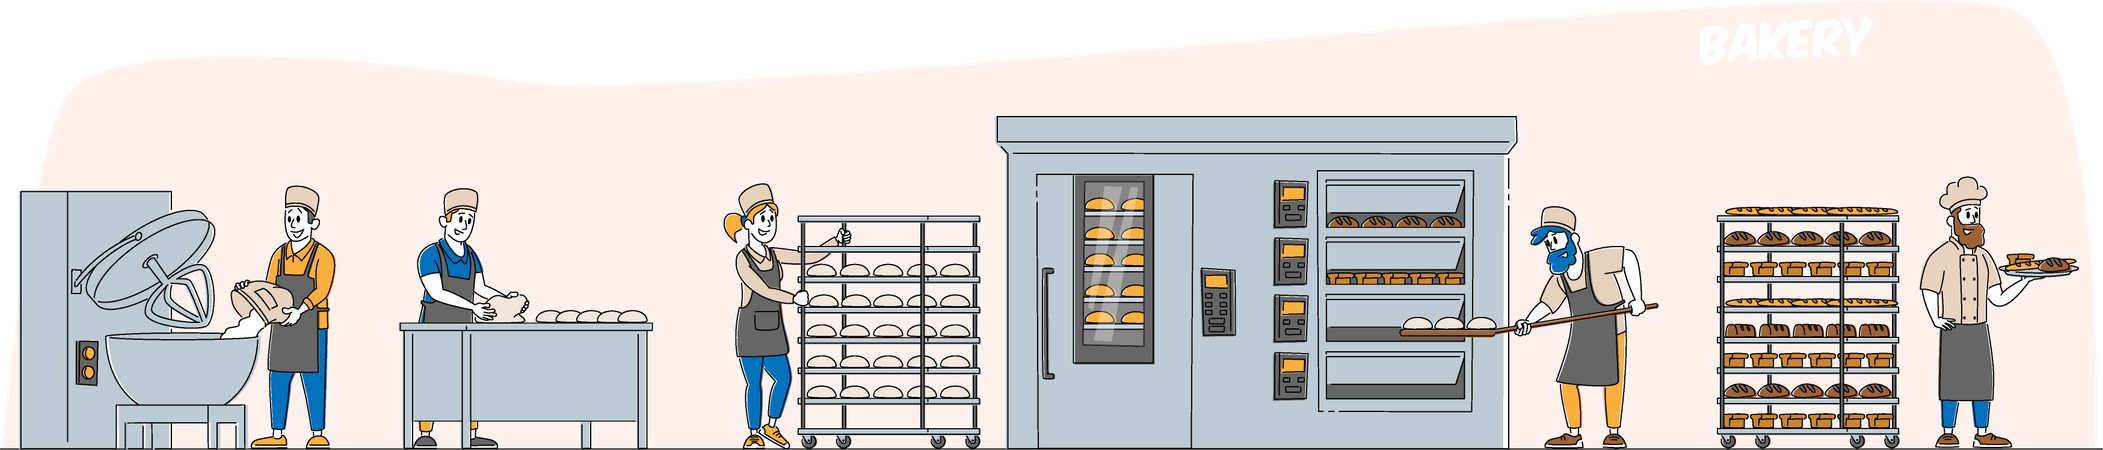 Producción de maquinaria para panadería y pan.  Ilustración